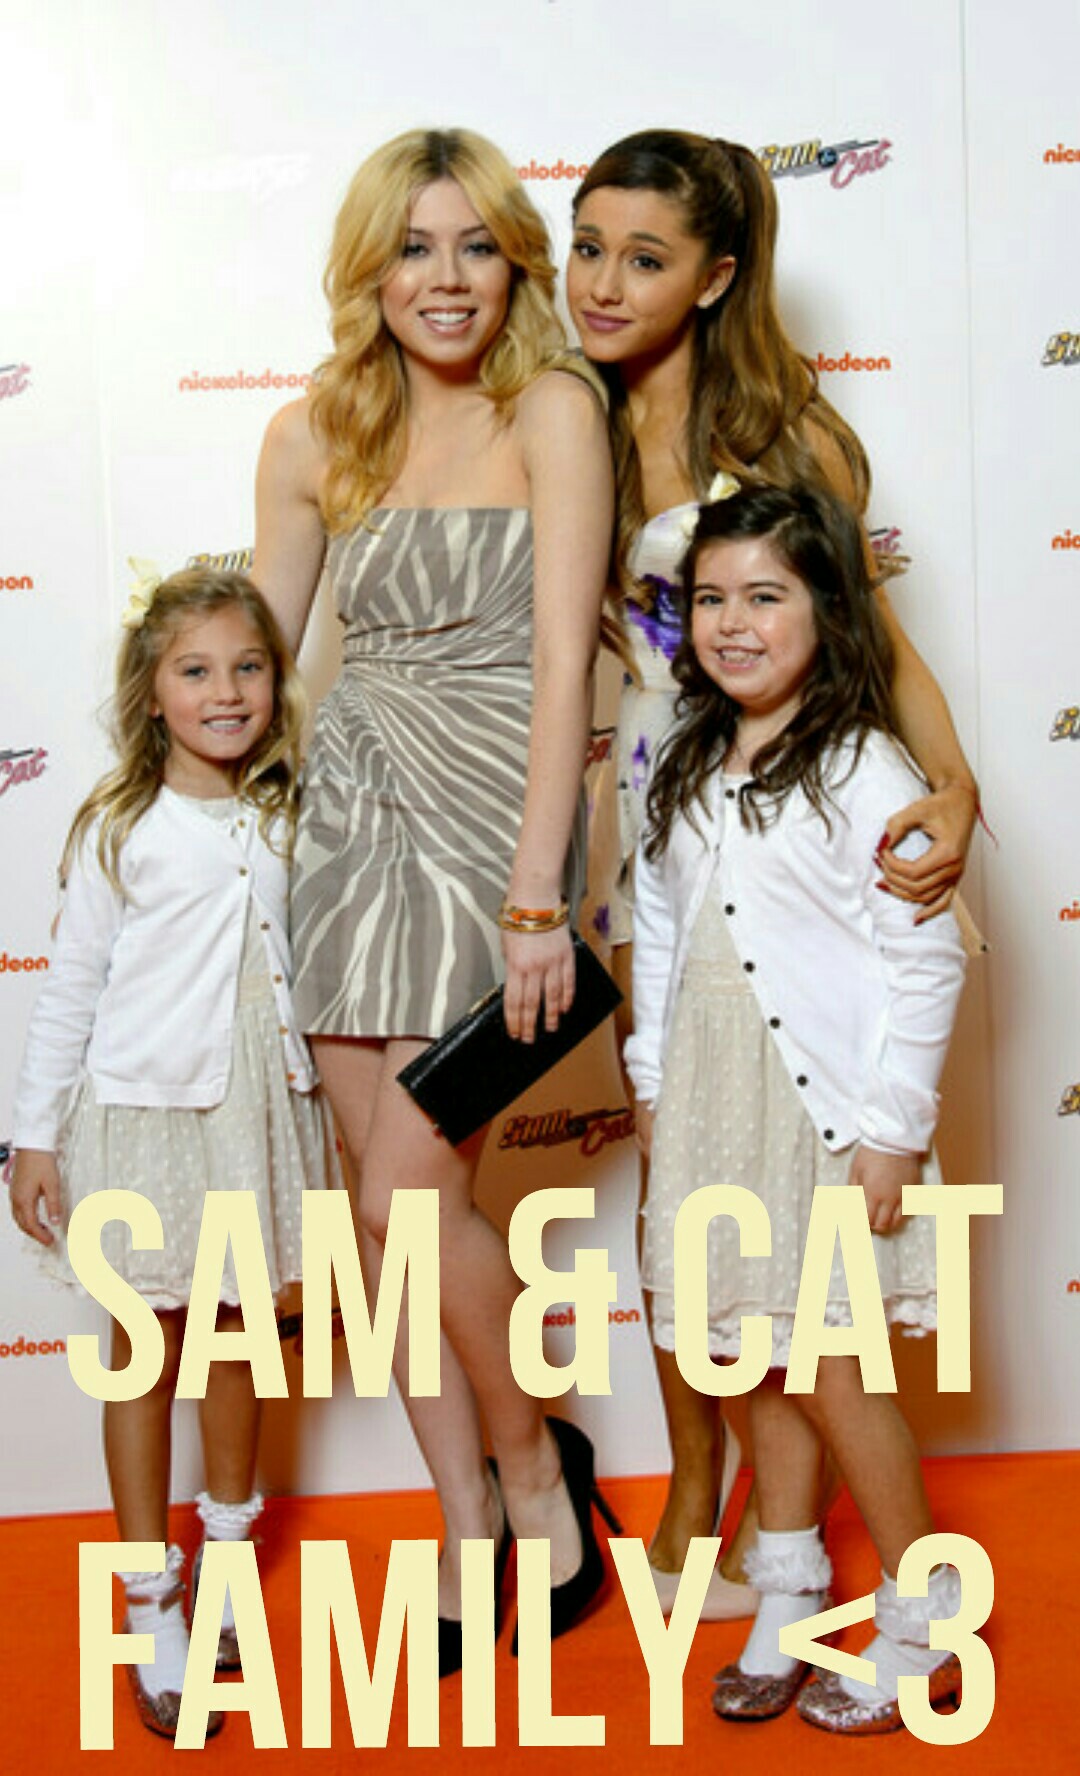 Sam & Cat
Family <3